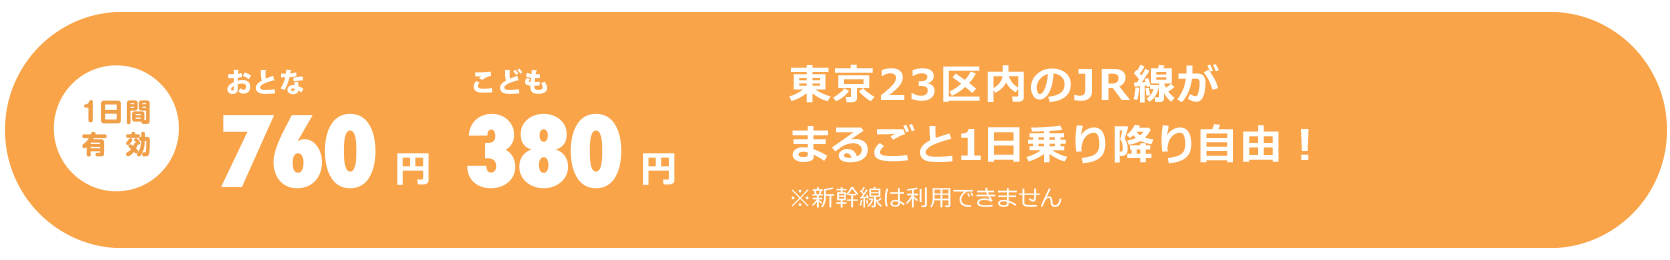 1日間有効 大人760円、子供380円。東京23区内のJR線※がまるごと1日乗り降り自由。※普通列車（快速列車含む）普通車自由席　※新幹線は利用できません。